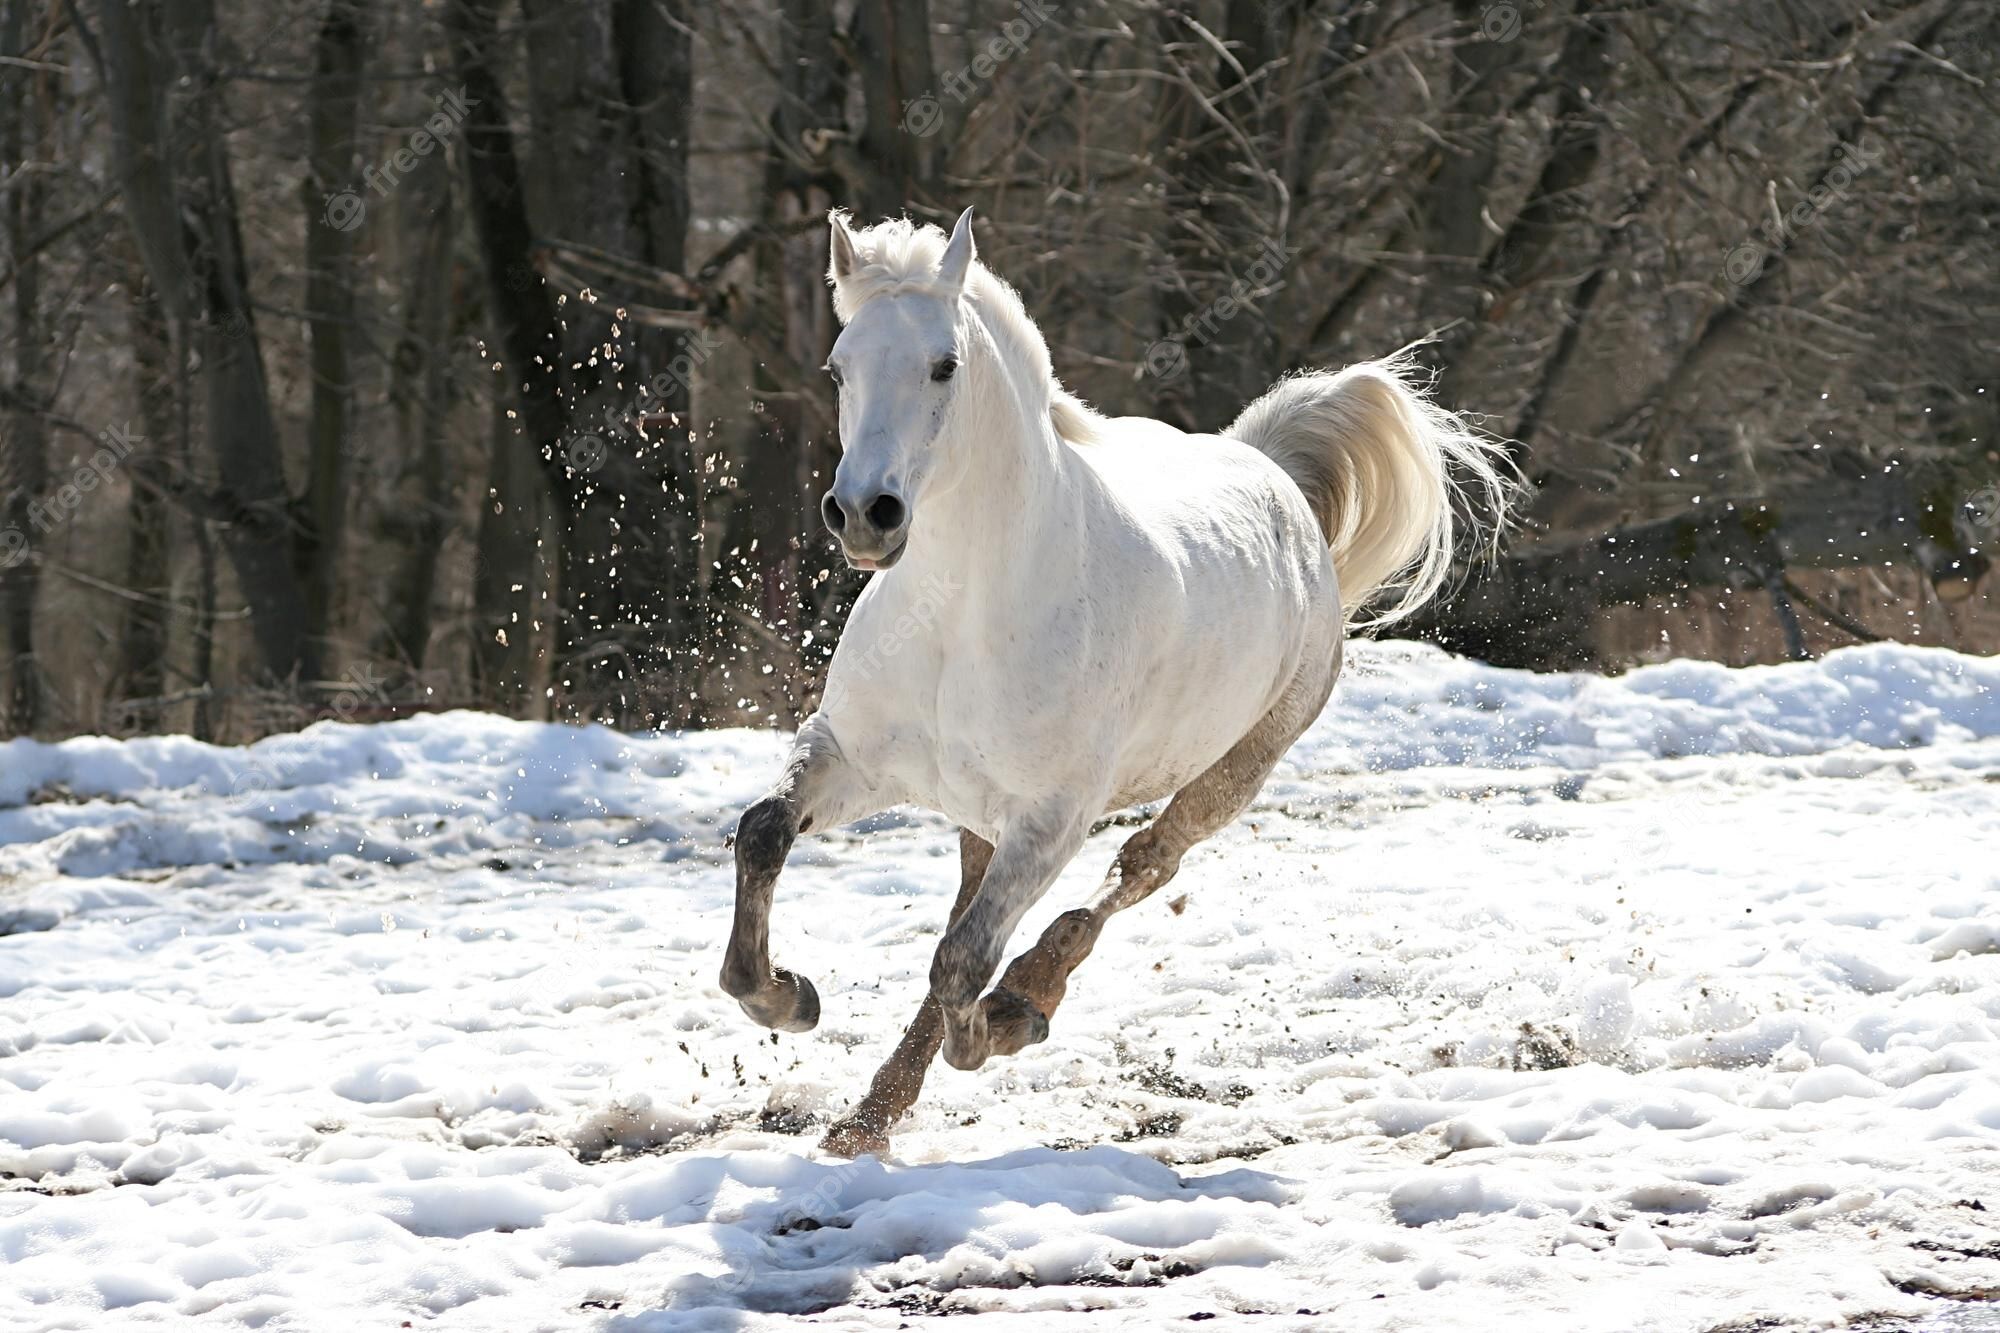  Pferde Im Schnee Hintergrundbild 2000x1333. Pferd Im Schnee Bilder Download auf Freepik